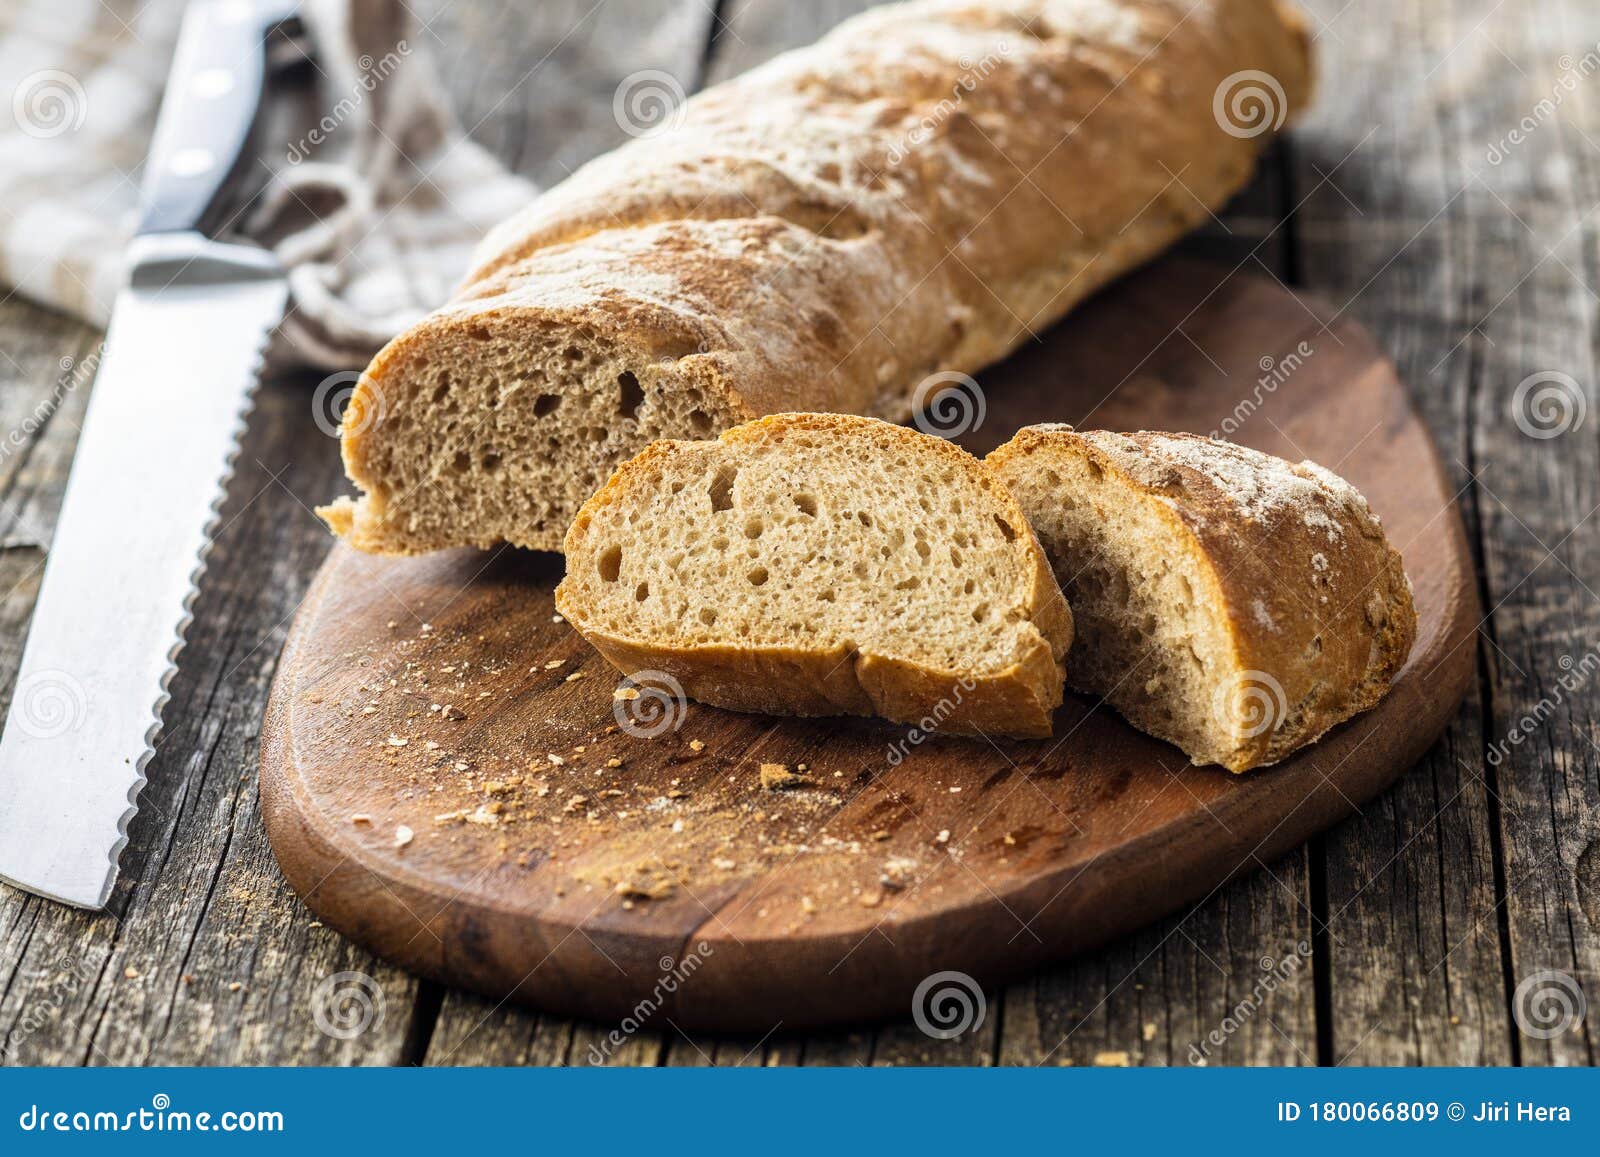 fresh whole grain bread baguette